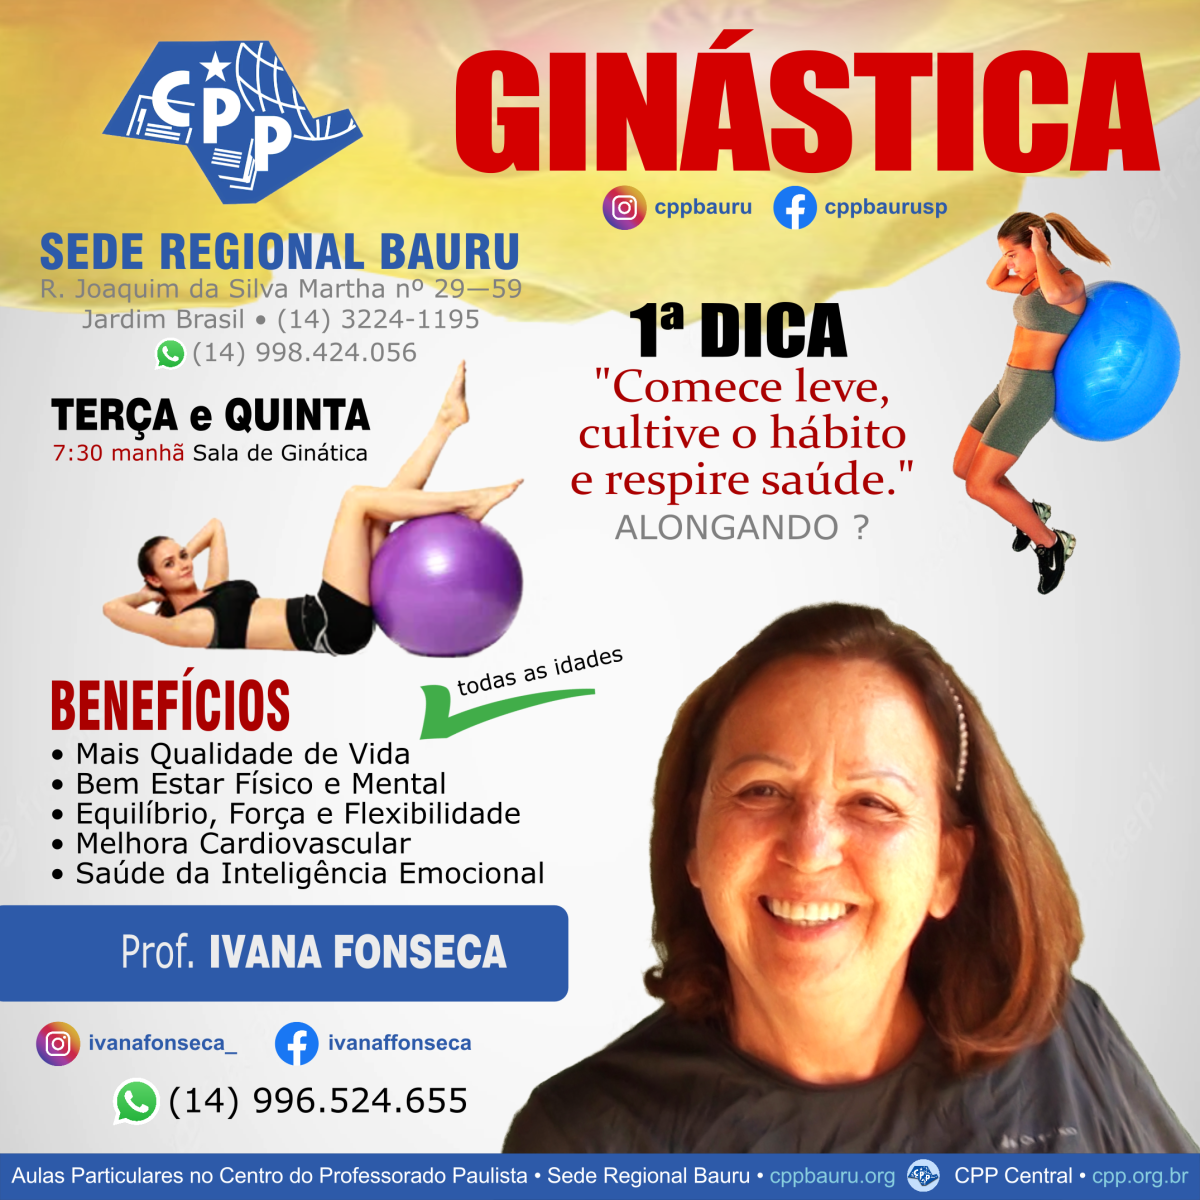 Ivana Fonseca • Professora de Ginástica